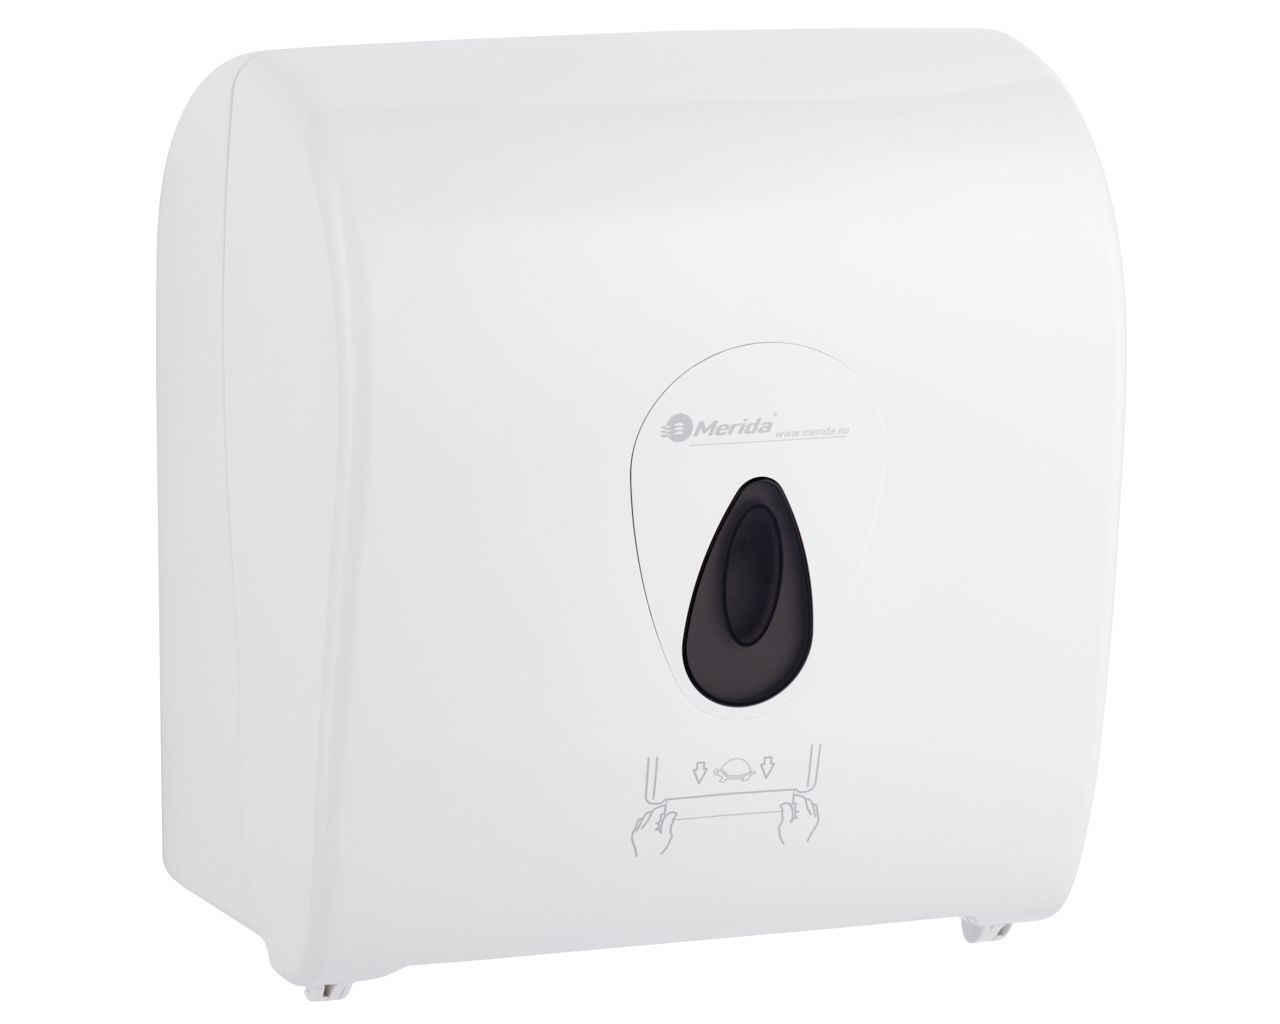 MERIDA TOP mechanical paper towel dispenser in rolls, maxi, grey window